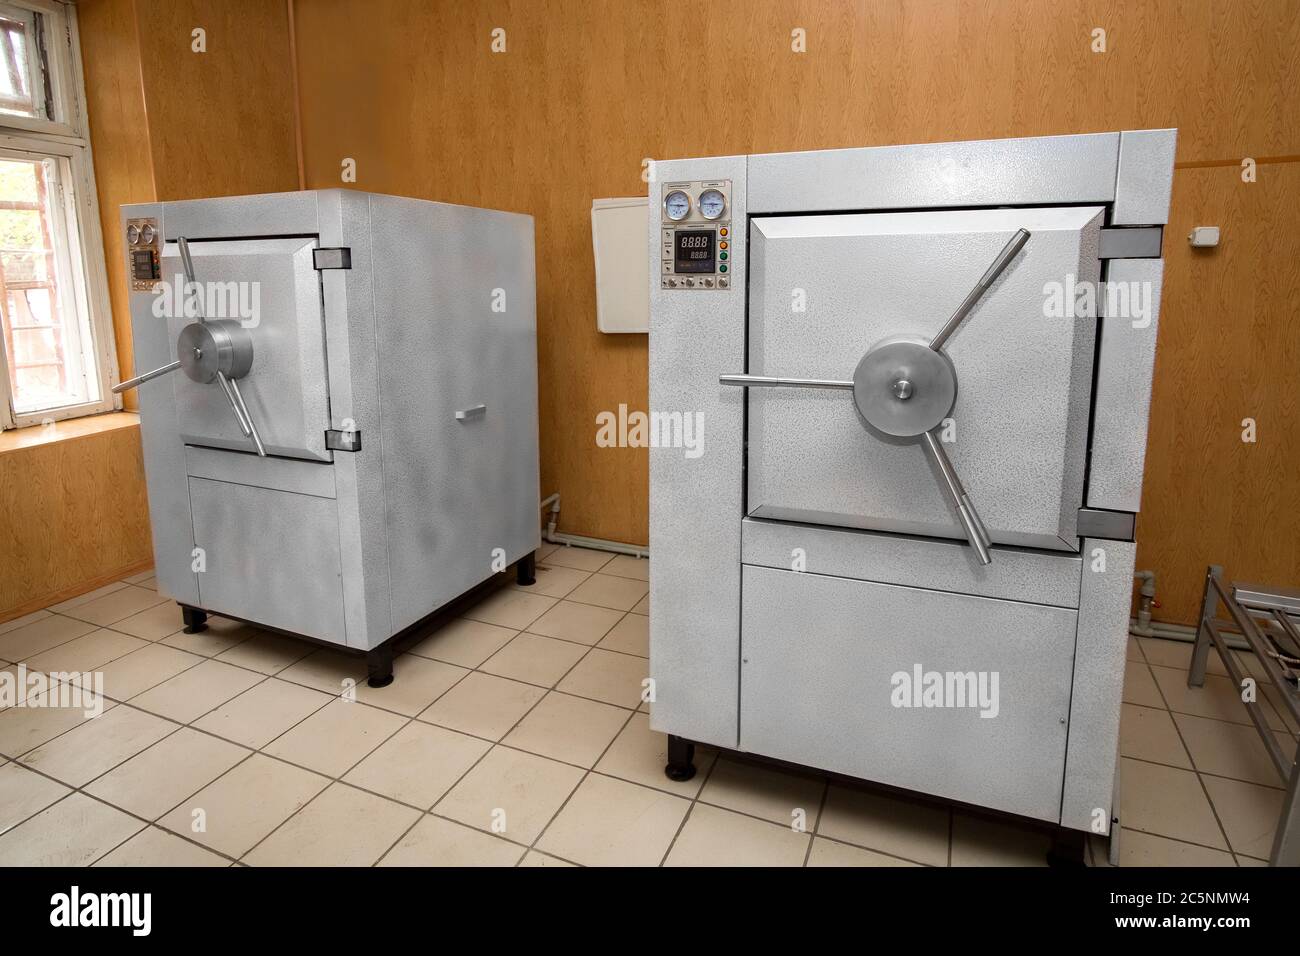 Autoclave industriel pour la désinfection des fournitures médicales, 2 dispositifs de l'industrie médicale dans la salle. Banque D'Images